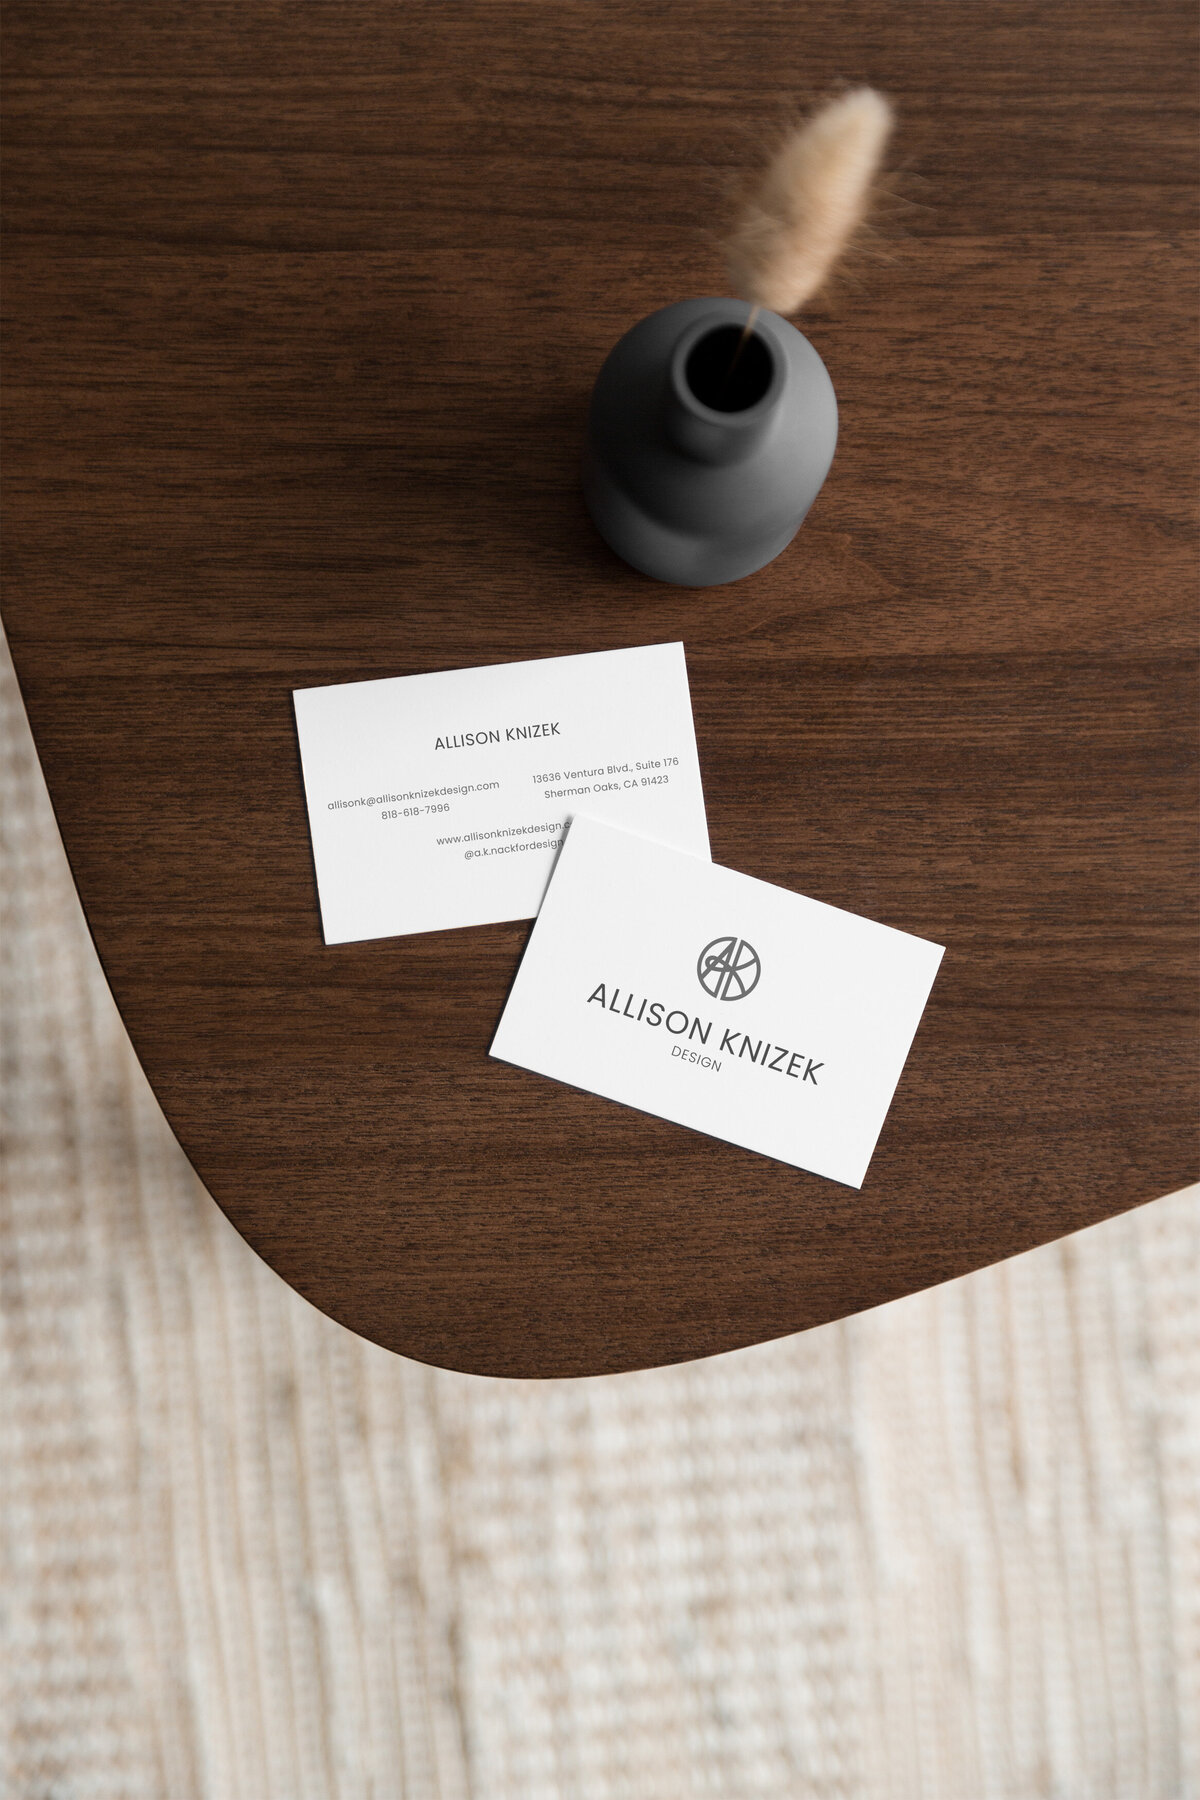 Business-Card-Design-Mockups-Allison-Knizek-Egg-on-Toast